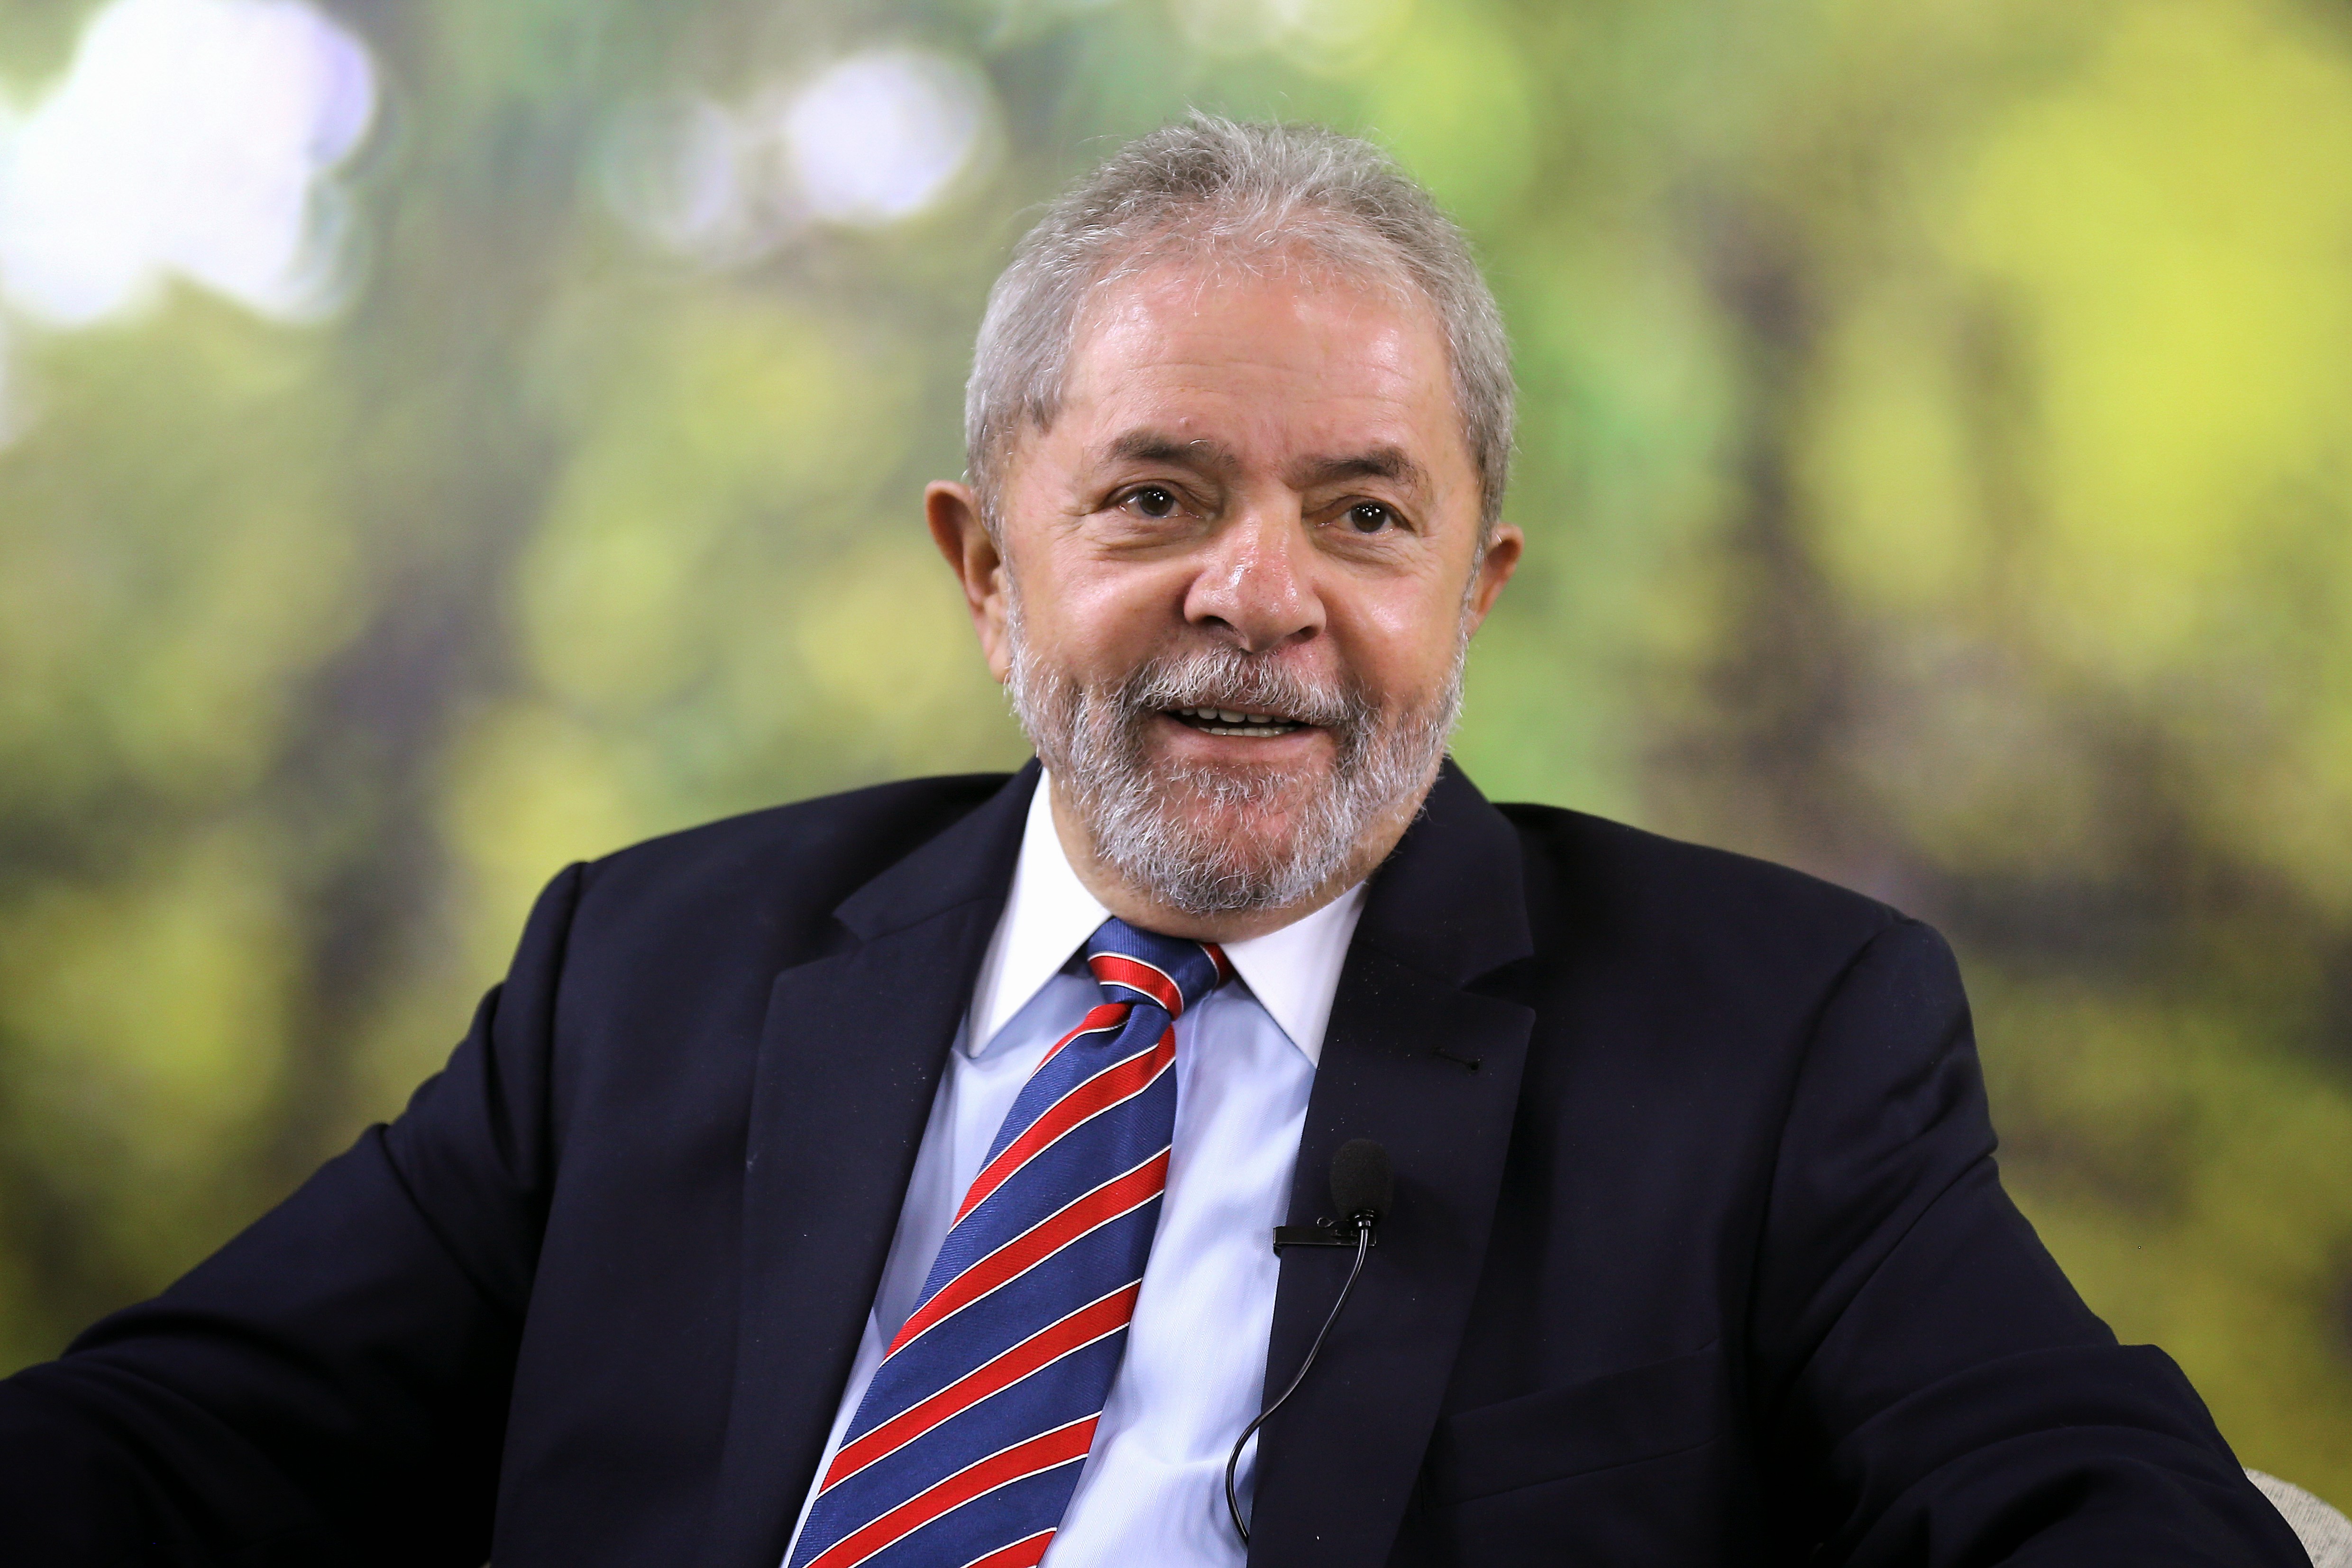 El juicio a Luiz Inacio Lula da Silva el 24 de enero agrava la crisis en Brasil. No importa el fallo del Tribunal de Porto Alegre, la división entre los defensores de Lula y los anti-Lula se profundizará. Crédito: Ricardo Stuckert/Instituto Lula.